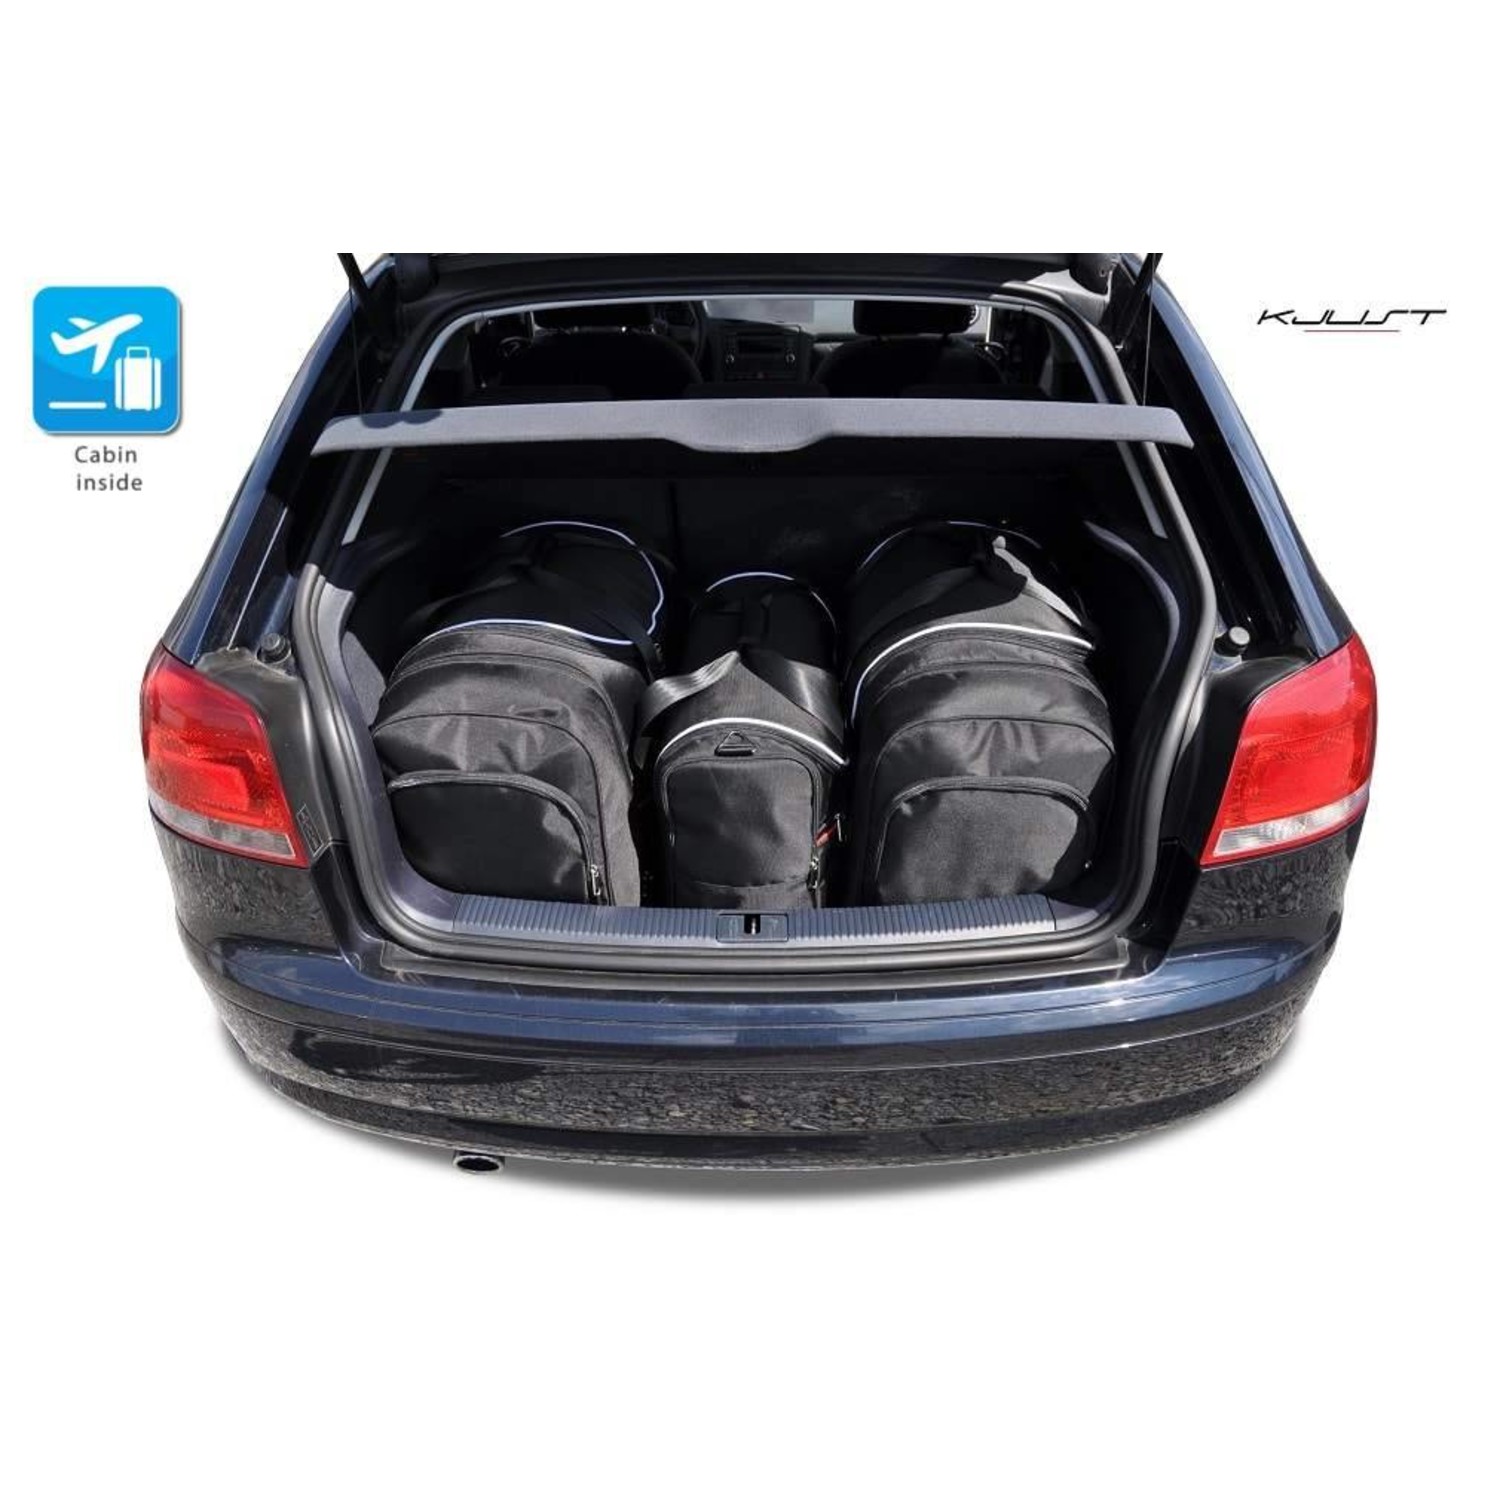 Maßgefertigtes Reisetaschen Set für Audi A3 8P - Maluch Premium Autozubehör